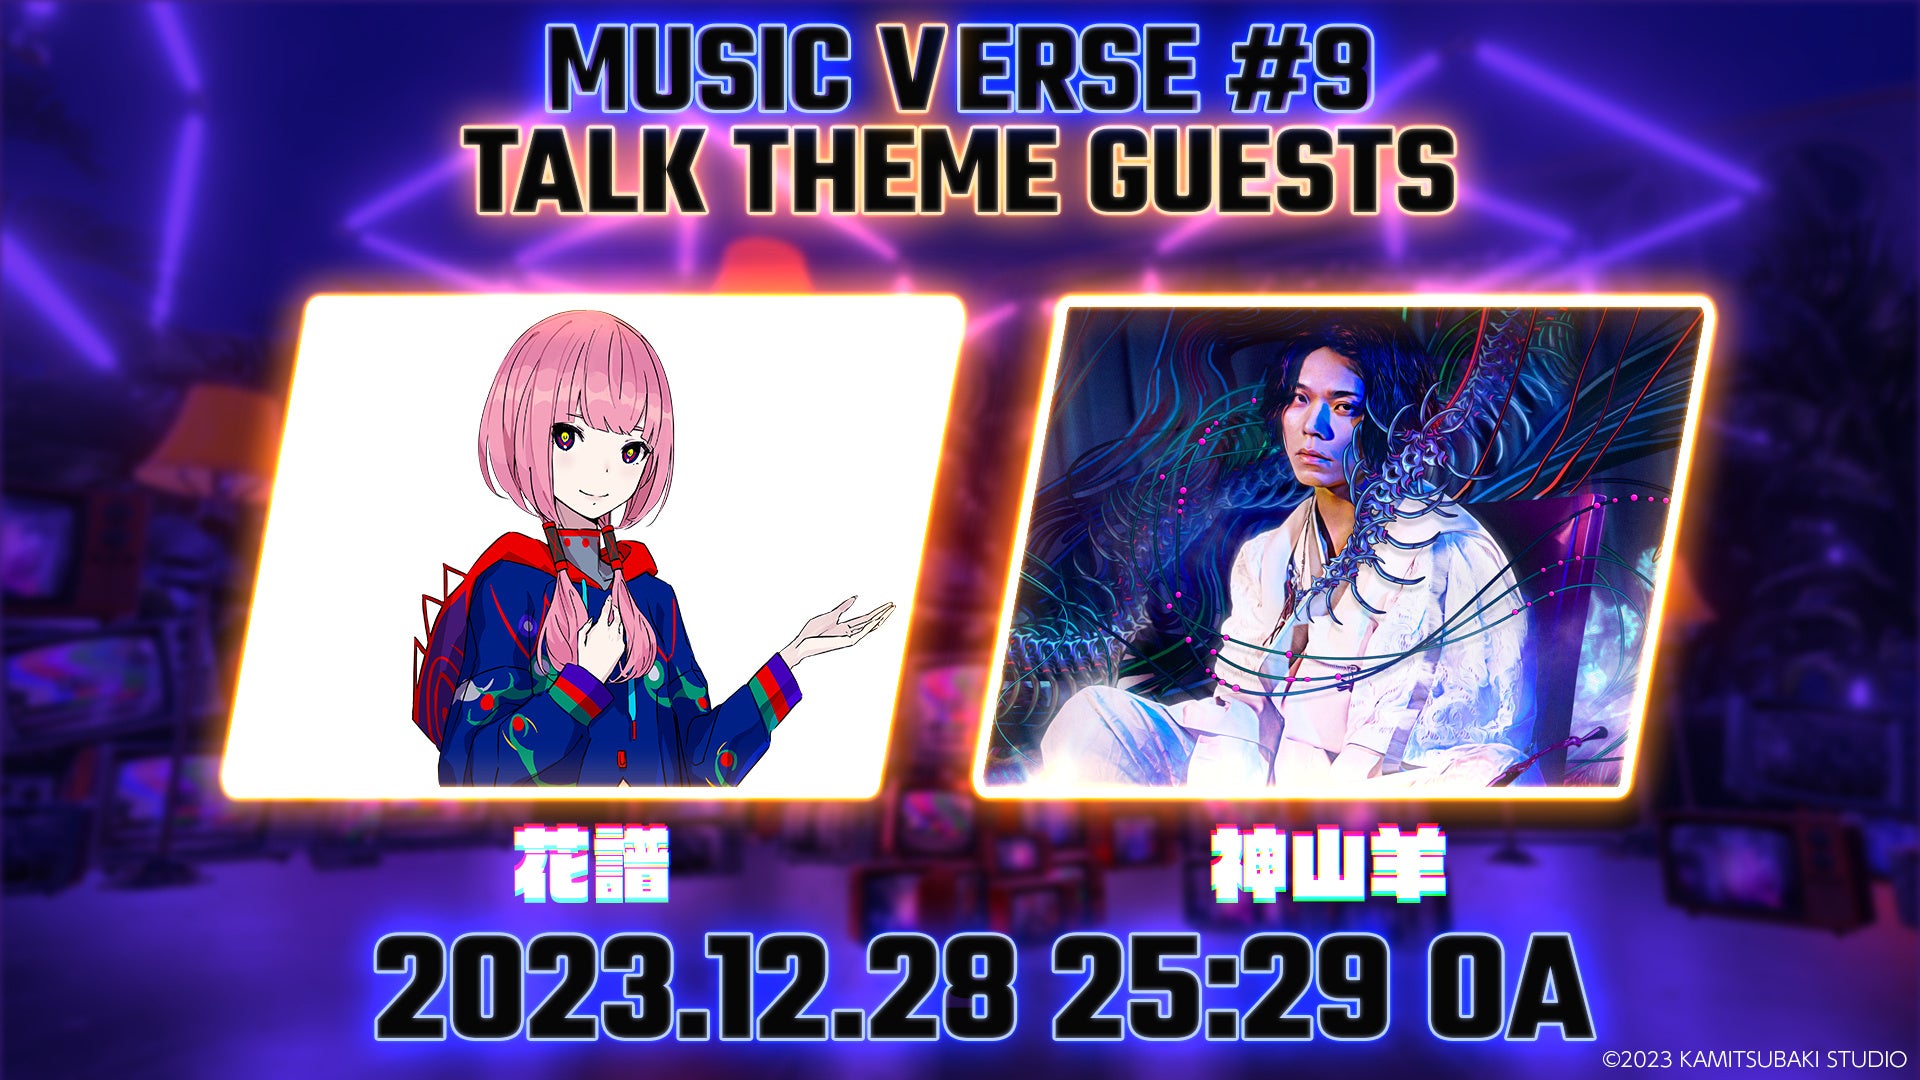 メタバース空間での地上波音楽番組「MUSIC VERSE #9」が日本テレビで12/28（木）25:29より放送されます